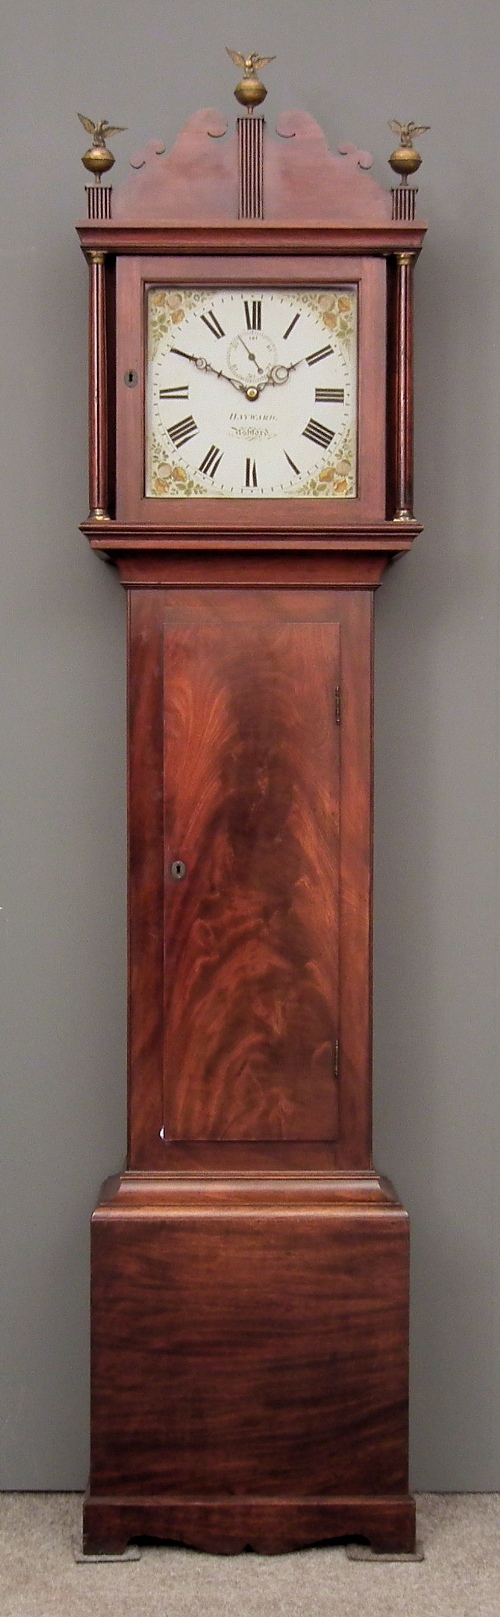 A 19th Century mahogany longcase 15d97c